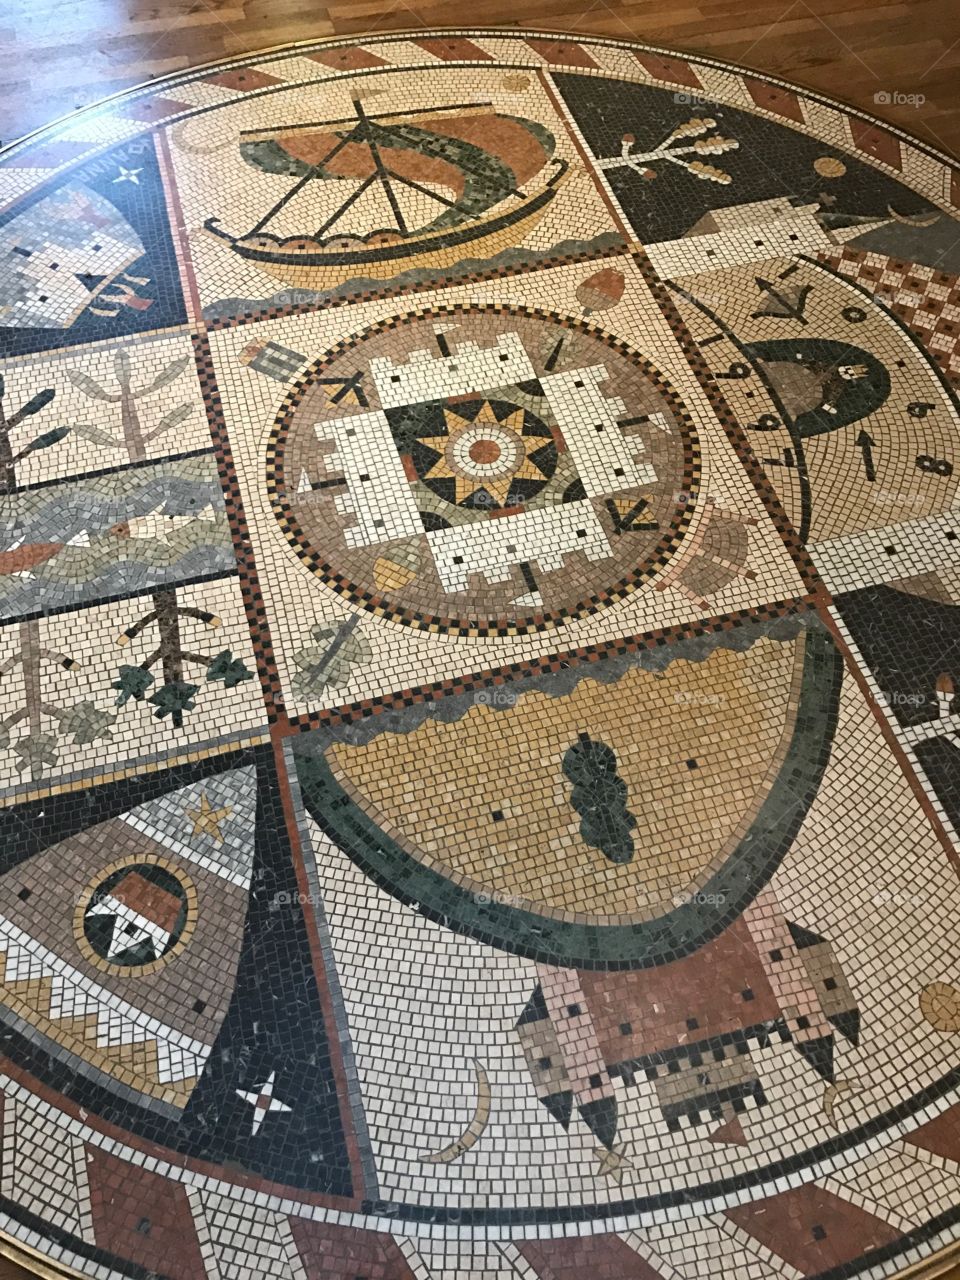 Nottingham Castle tile floor